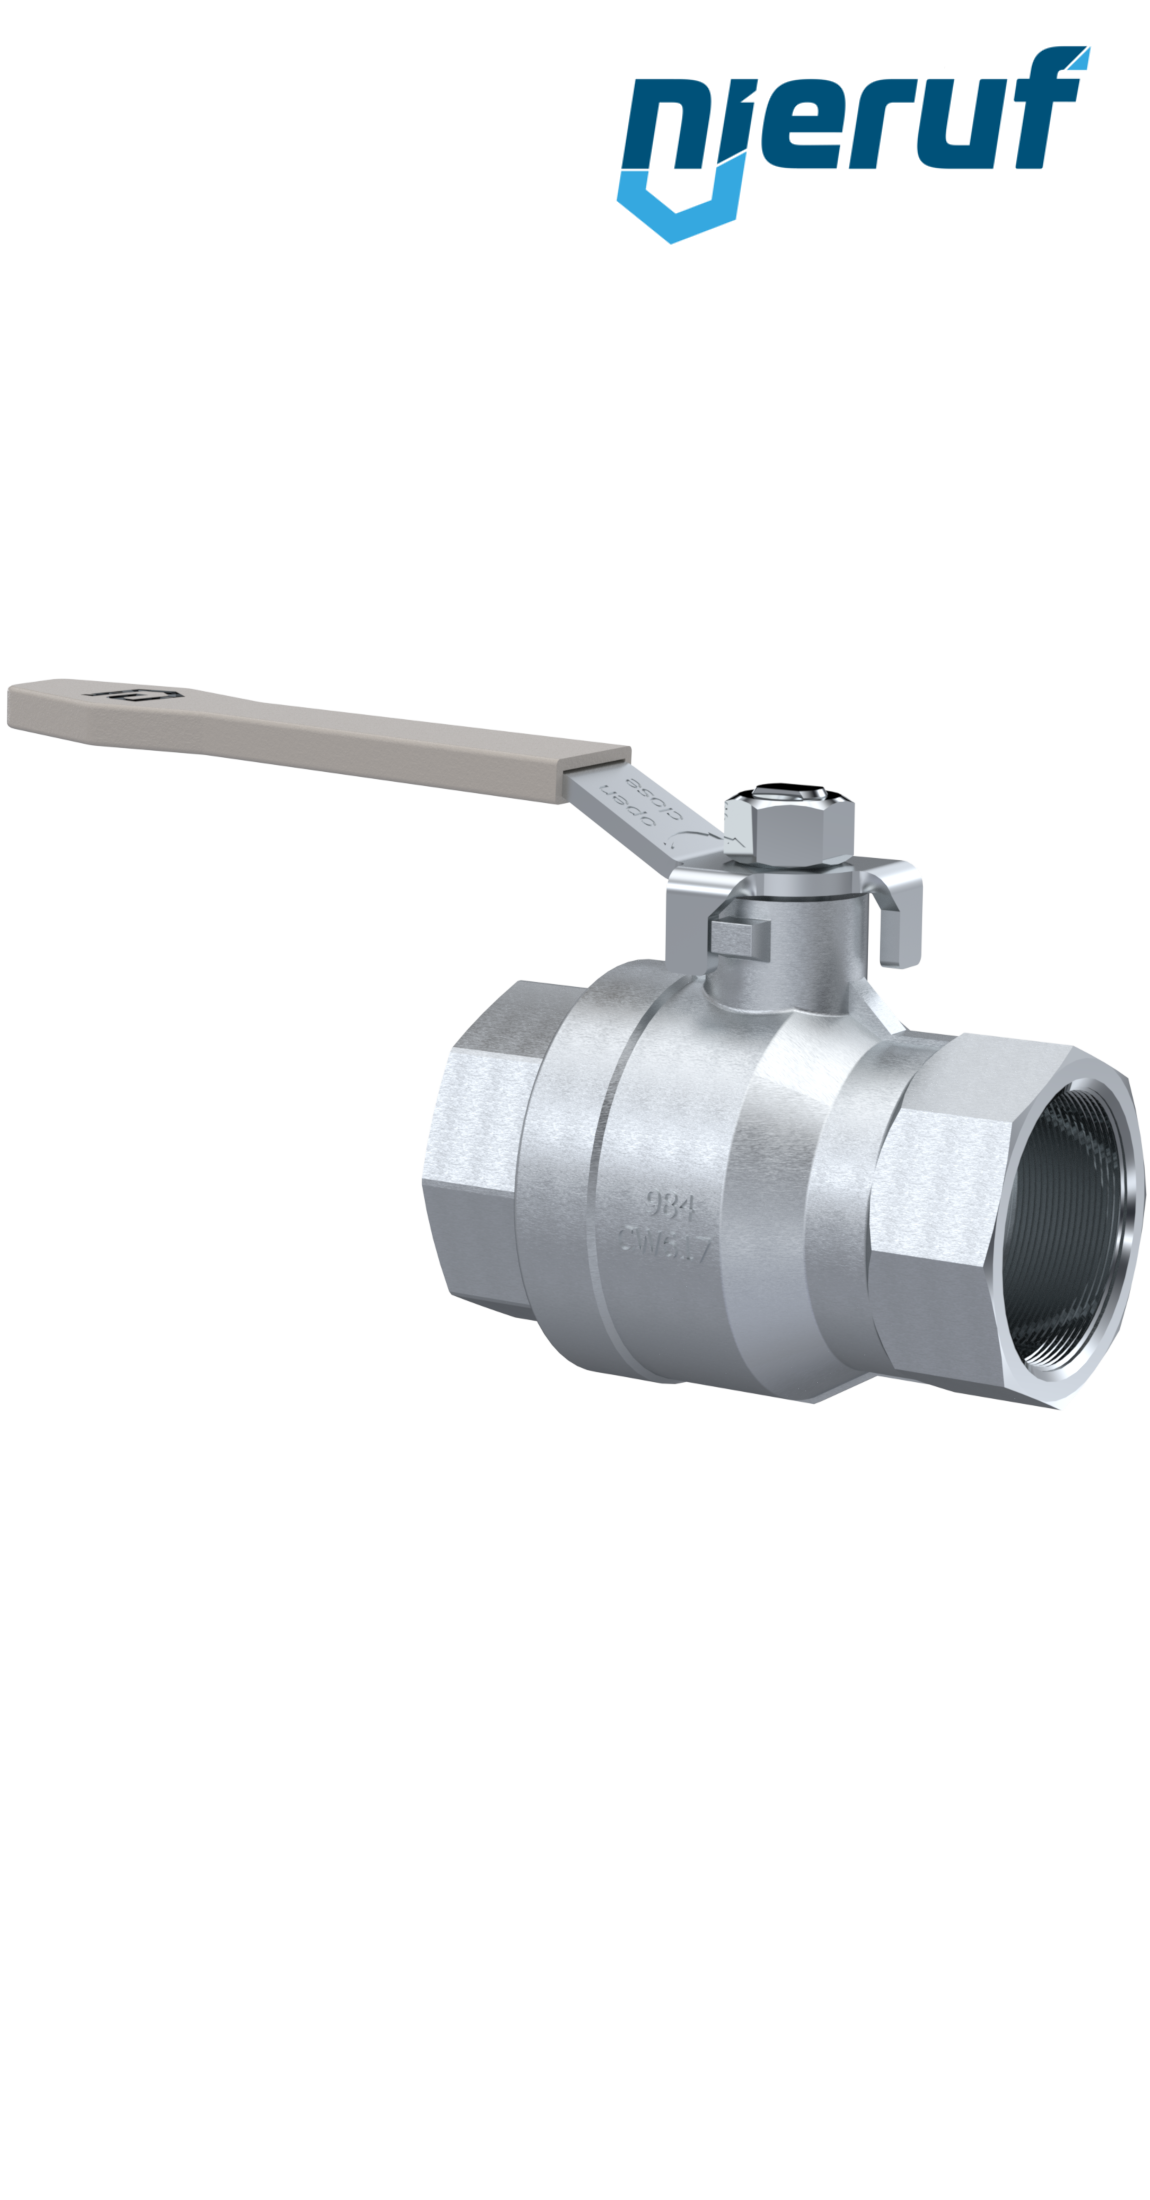 ball valve made of brass DN40 - 1 1/2" inch GK02 gas & water DVGW